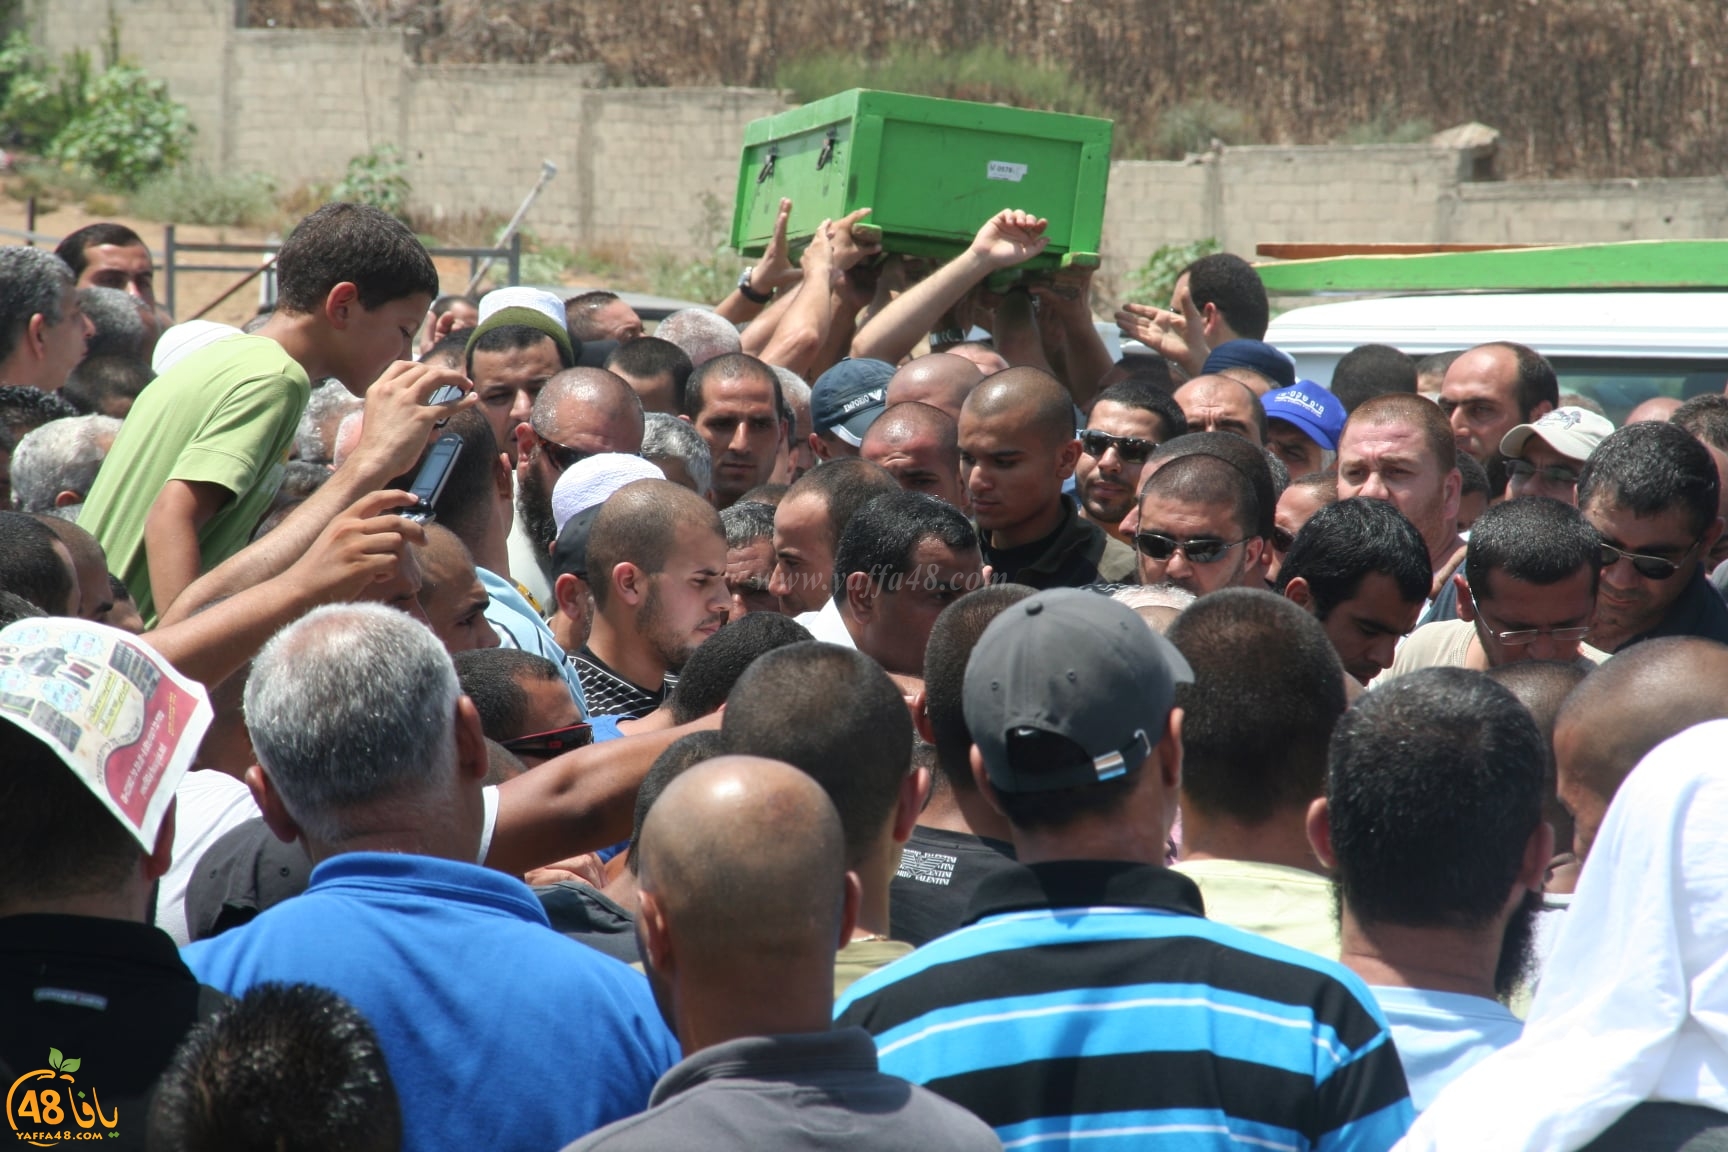 في ذكرى وفاته الـ12 - صور تُعرض لأول مرة من جنازة الشيخ بسام أبو زيد بيافا